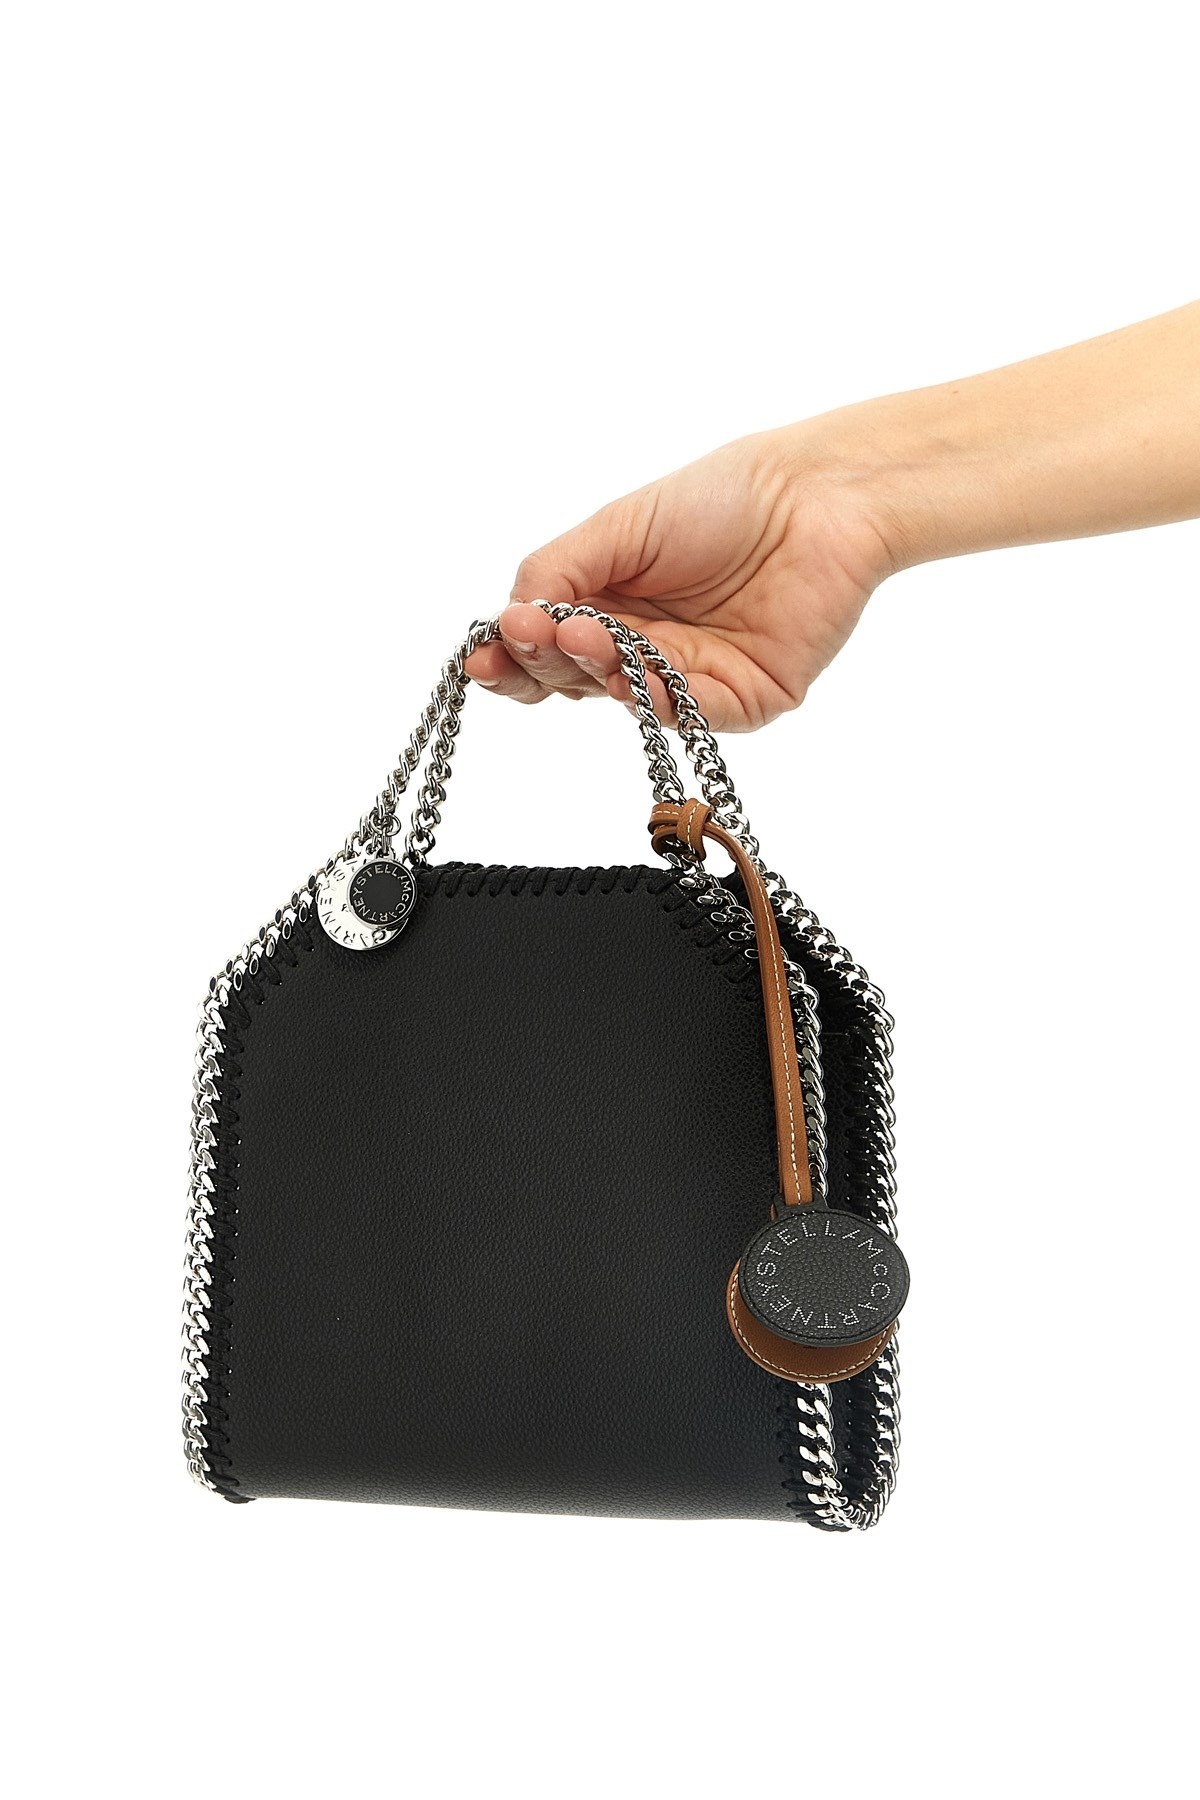 'Falabella' handbag - 2